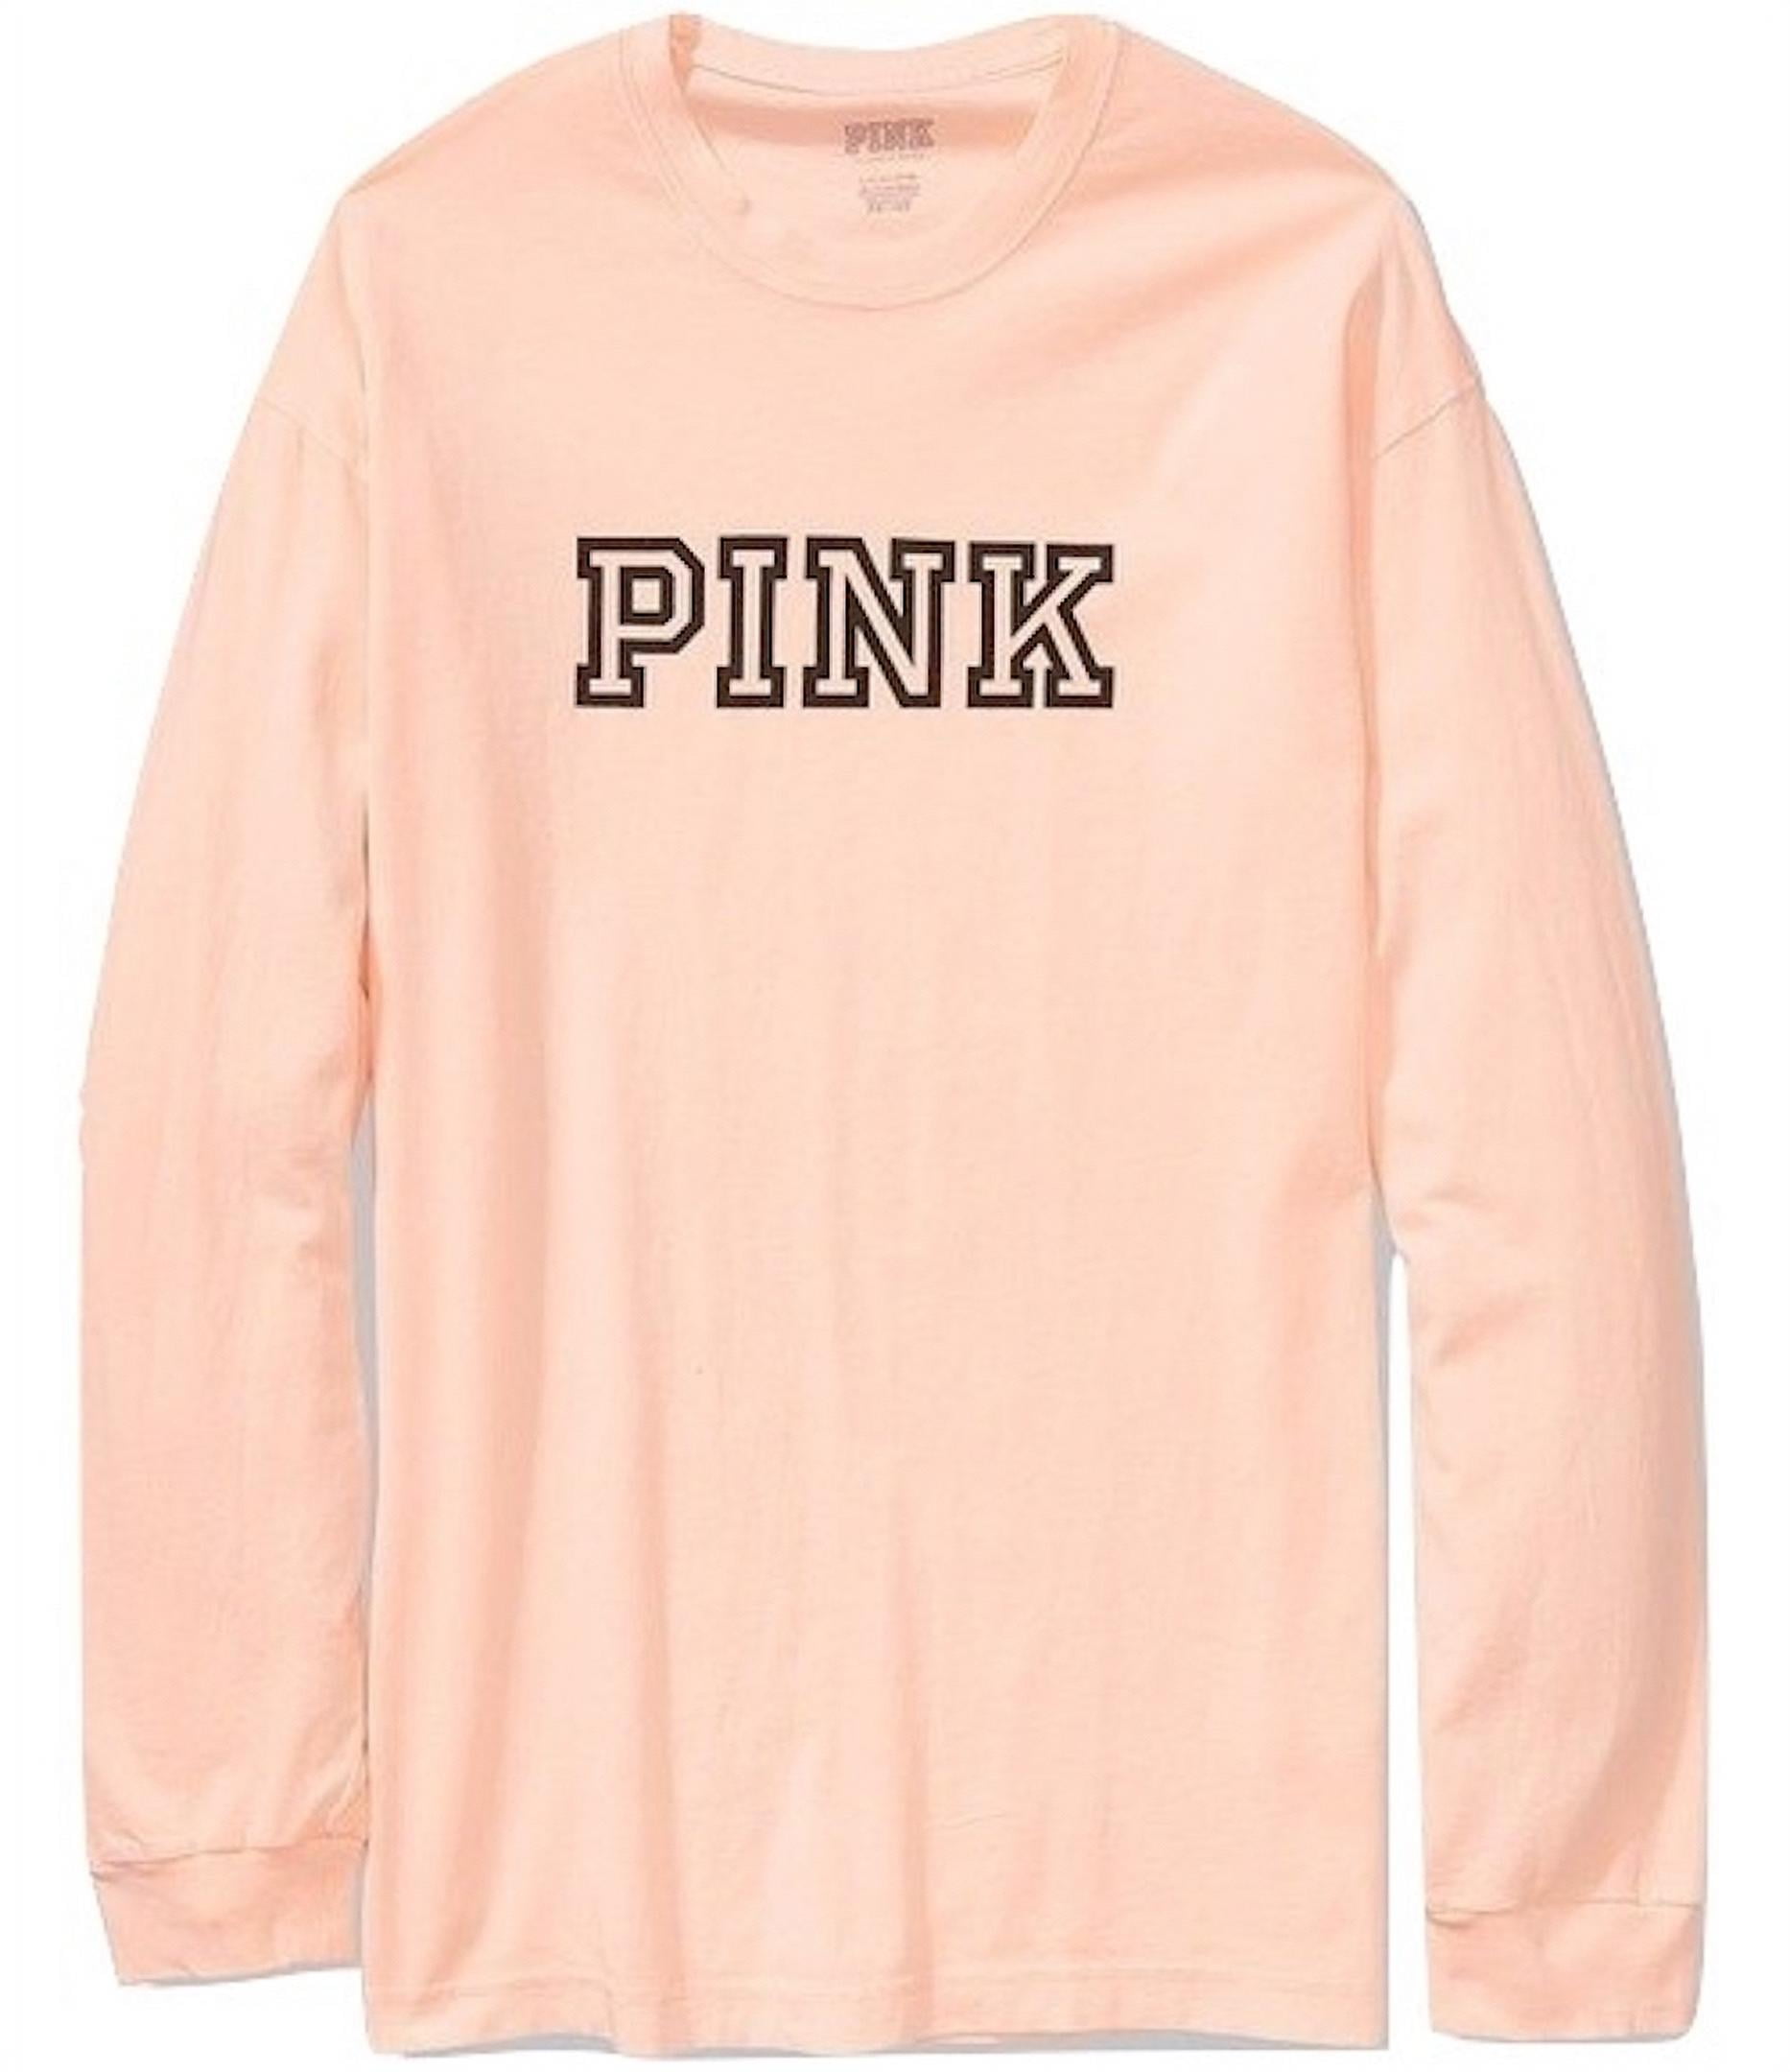 VICTORIA'S SECRET Sweatshirt X-large Vintage Pink Victoria's Secret  Crewneck Pullover Leapord Size XL 